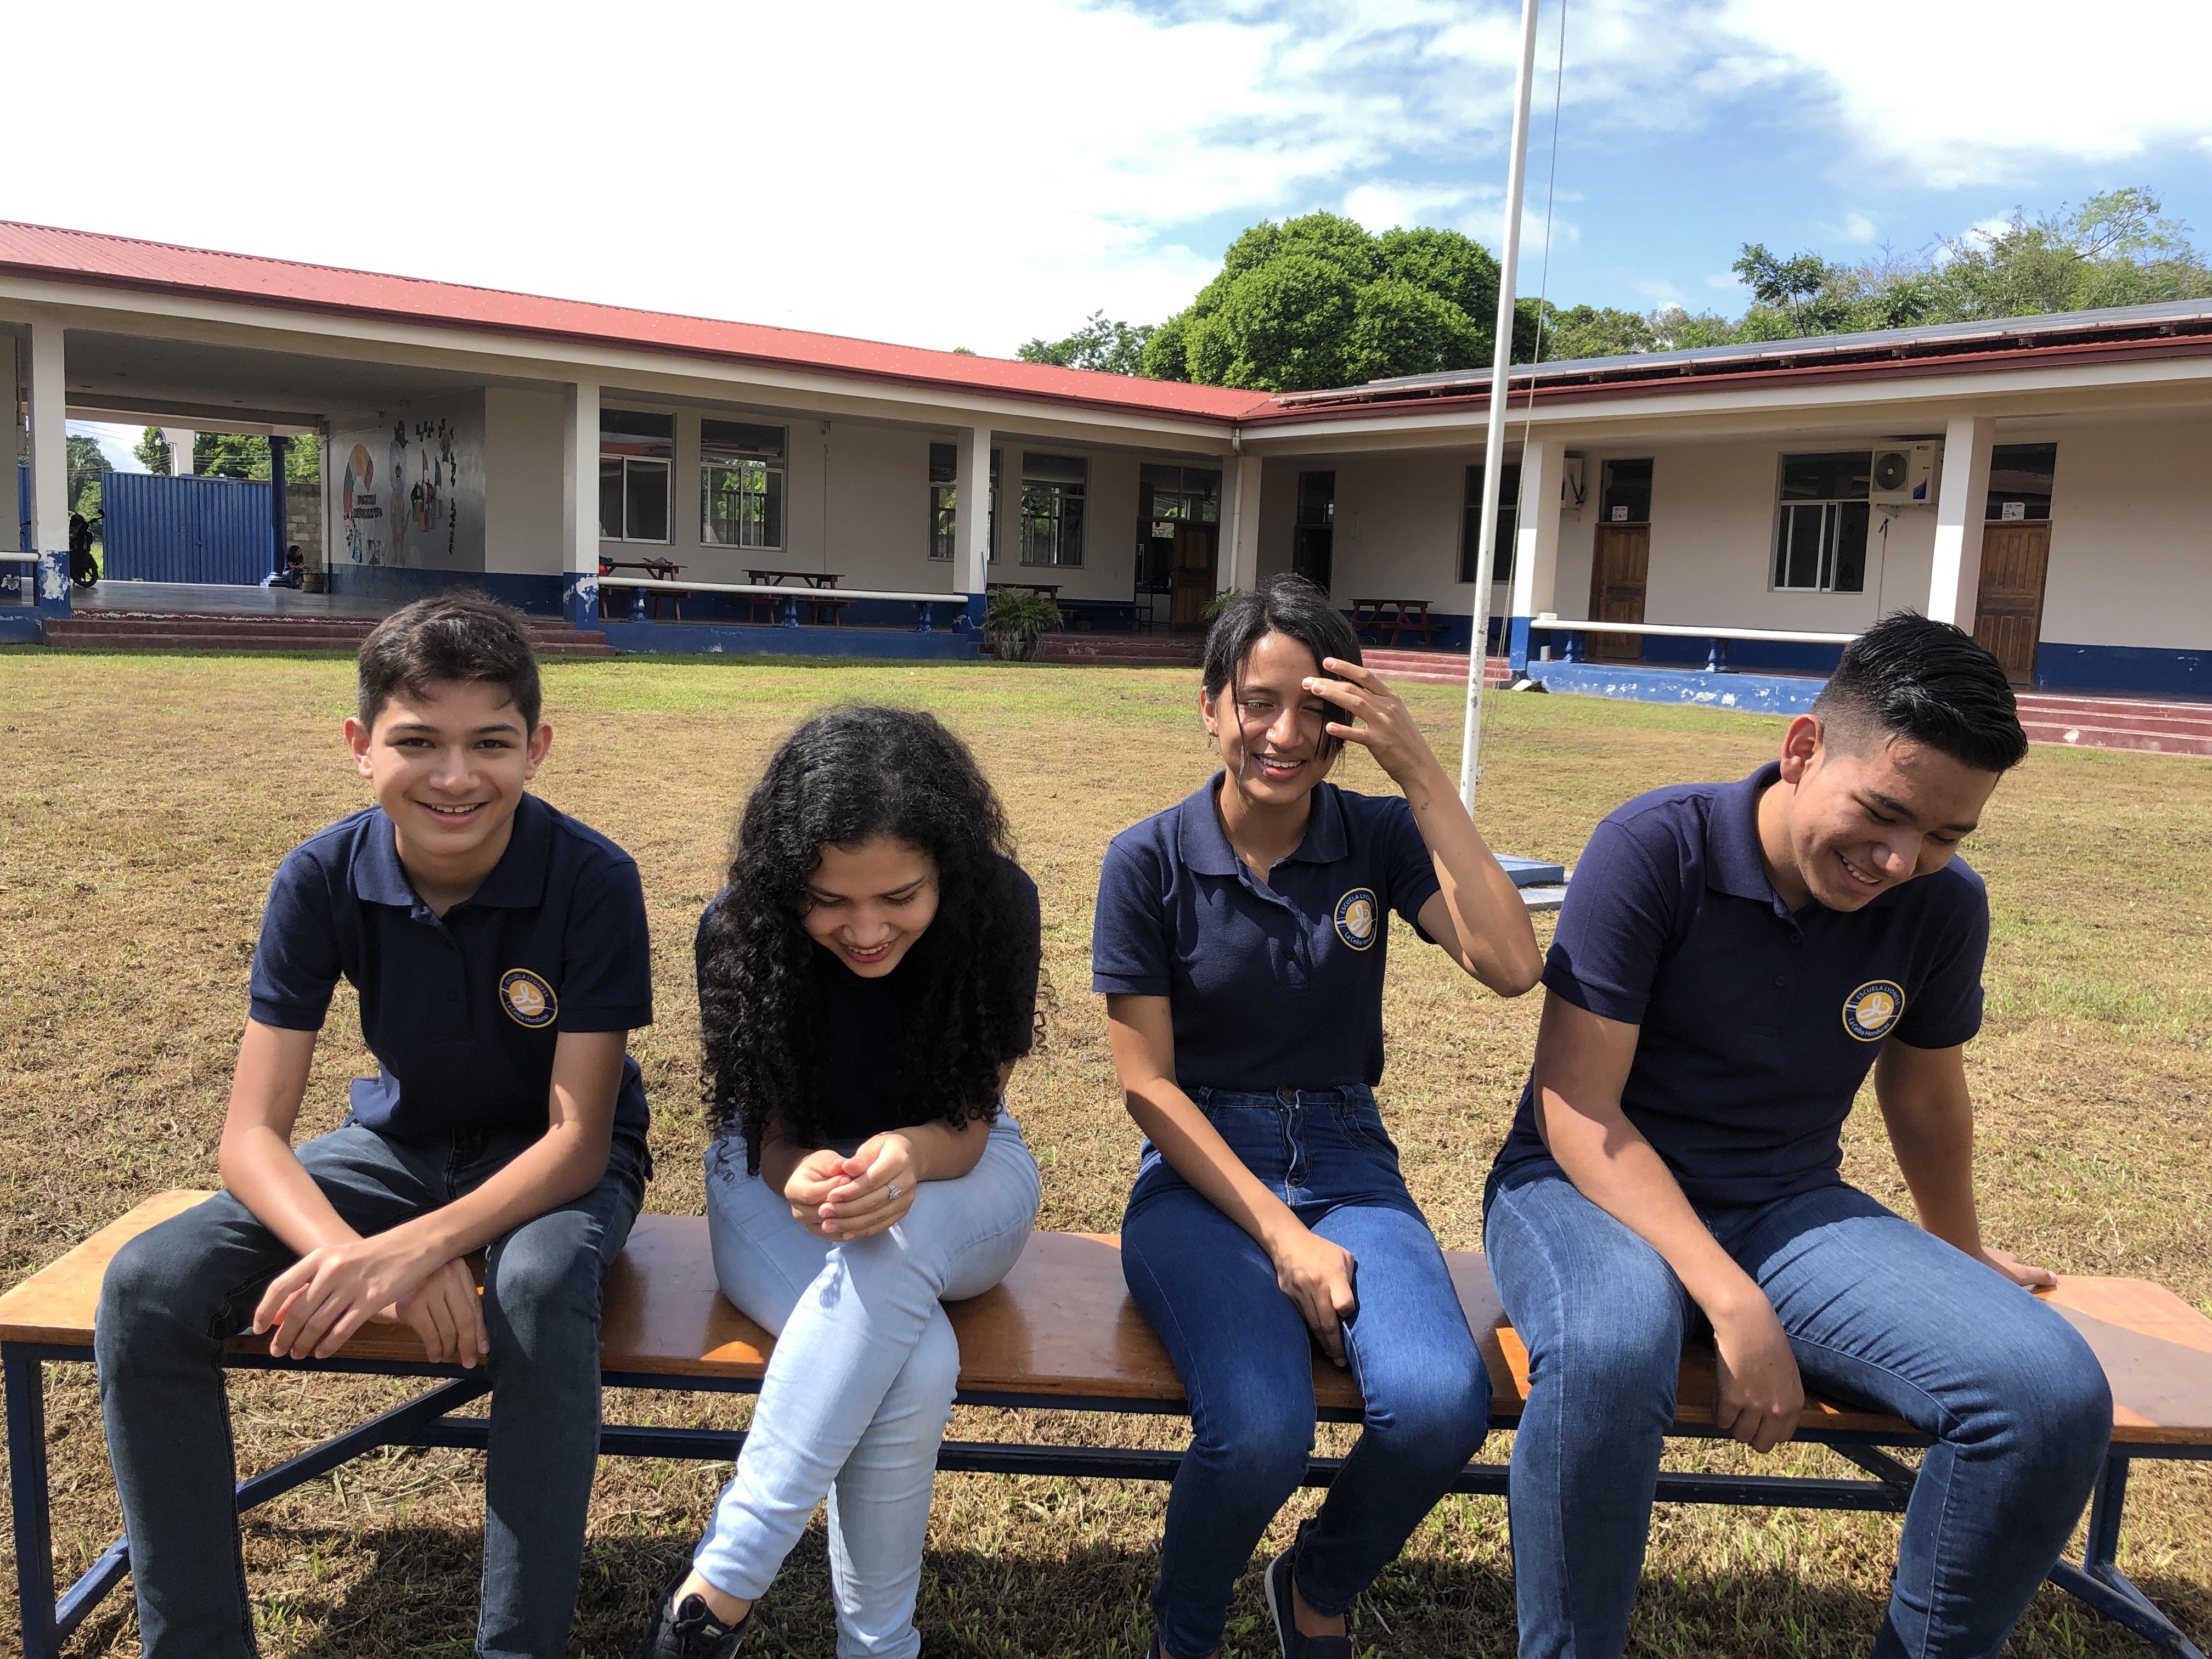 Ein historischer Moment: Die erste Klasse der CFF Escuela in Honduras macht ihren Abschluss!